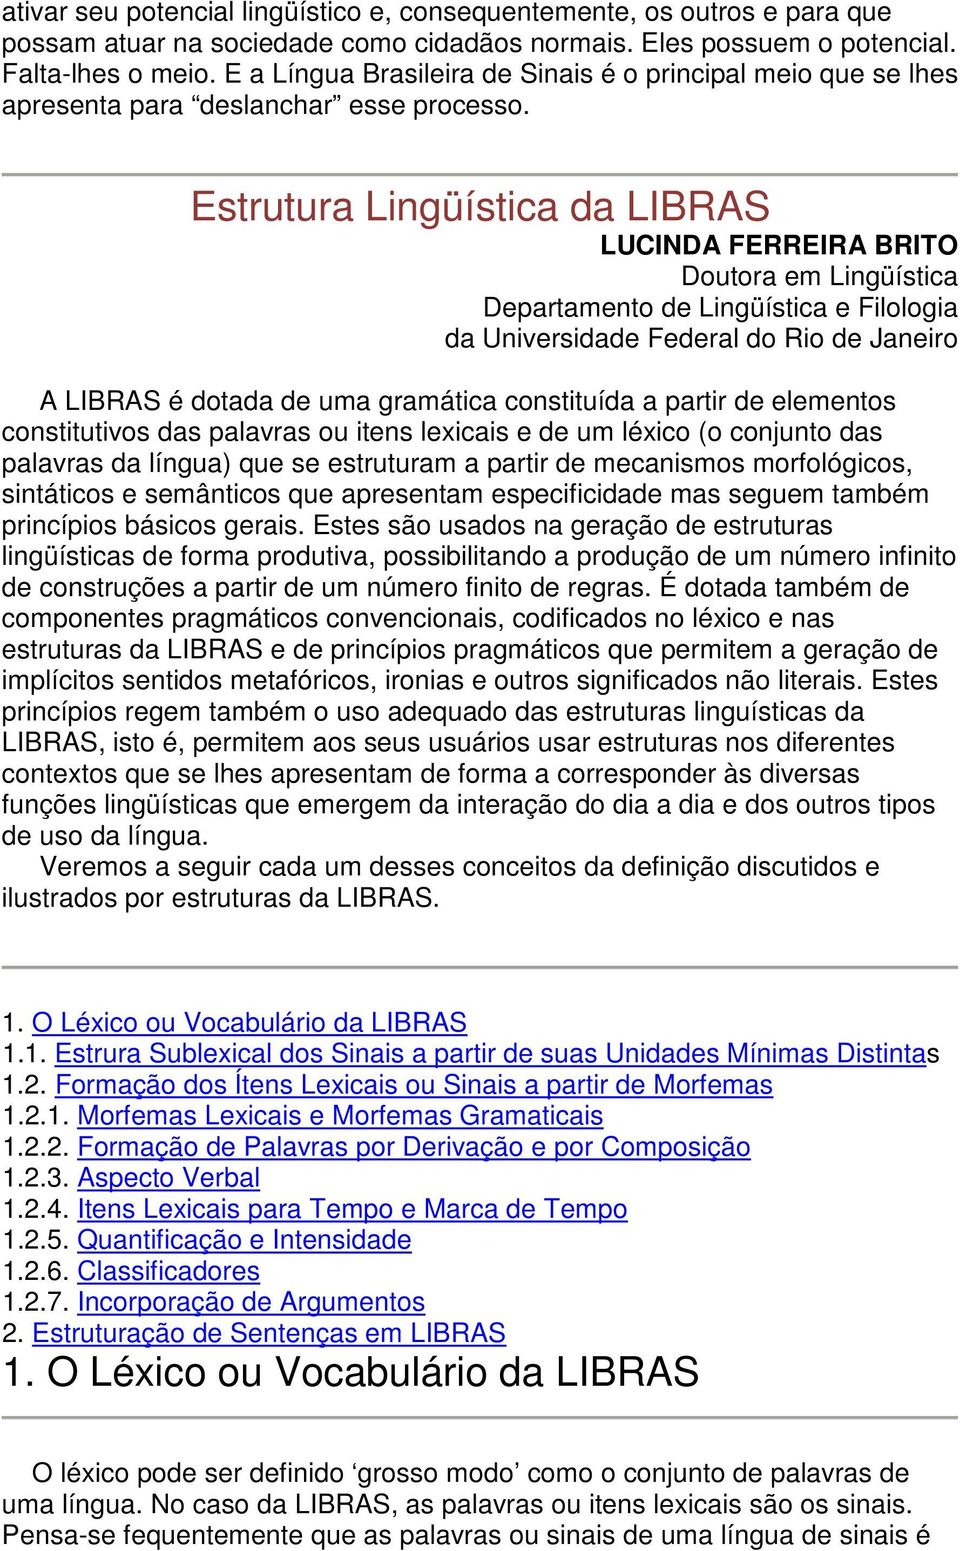 Estrutura Lingüística da LIBRAS LUCINDA FERREIRA BRITO Doutora em Lingüística Departamento de Lingüística e Filologia da Universidade Federal do Rio de Janeiro A LIBRAS é dotada de uma gramática